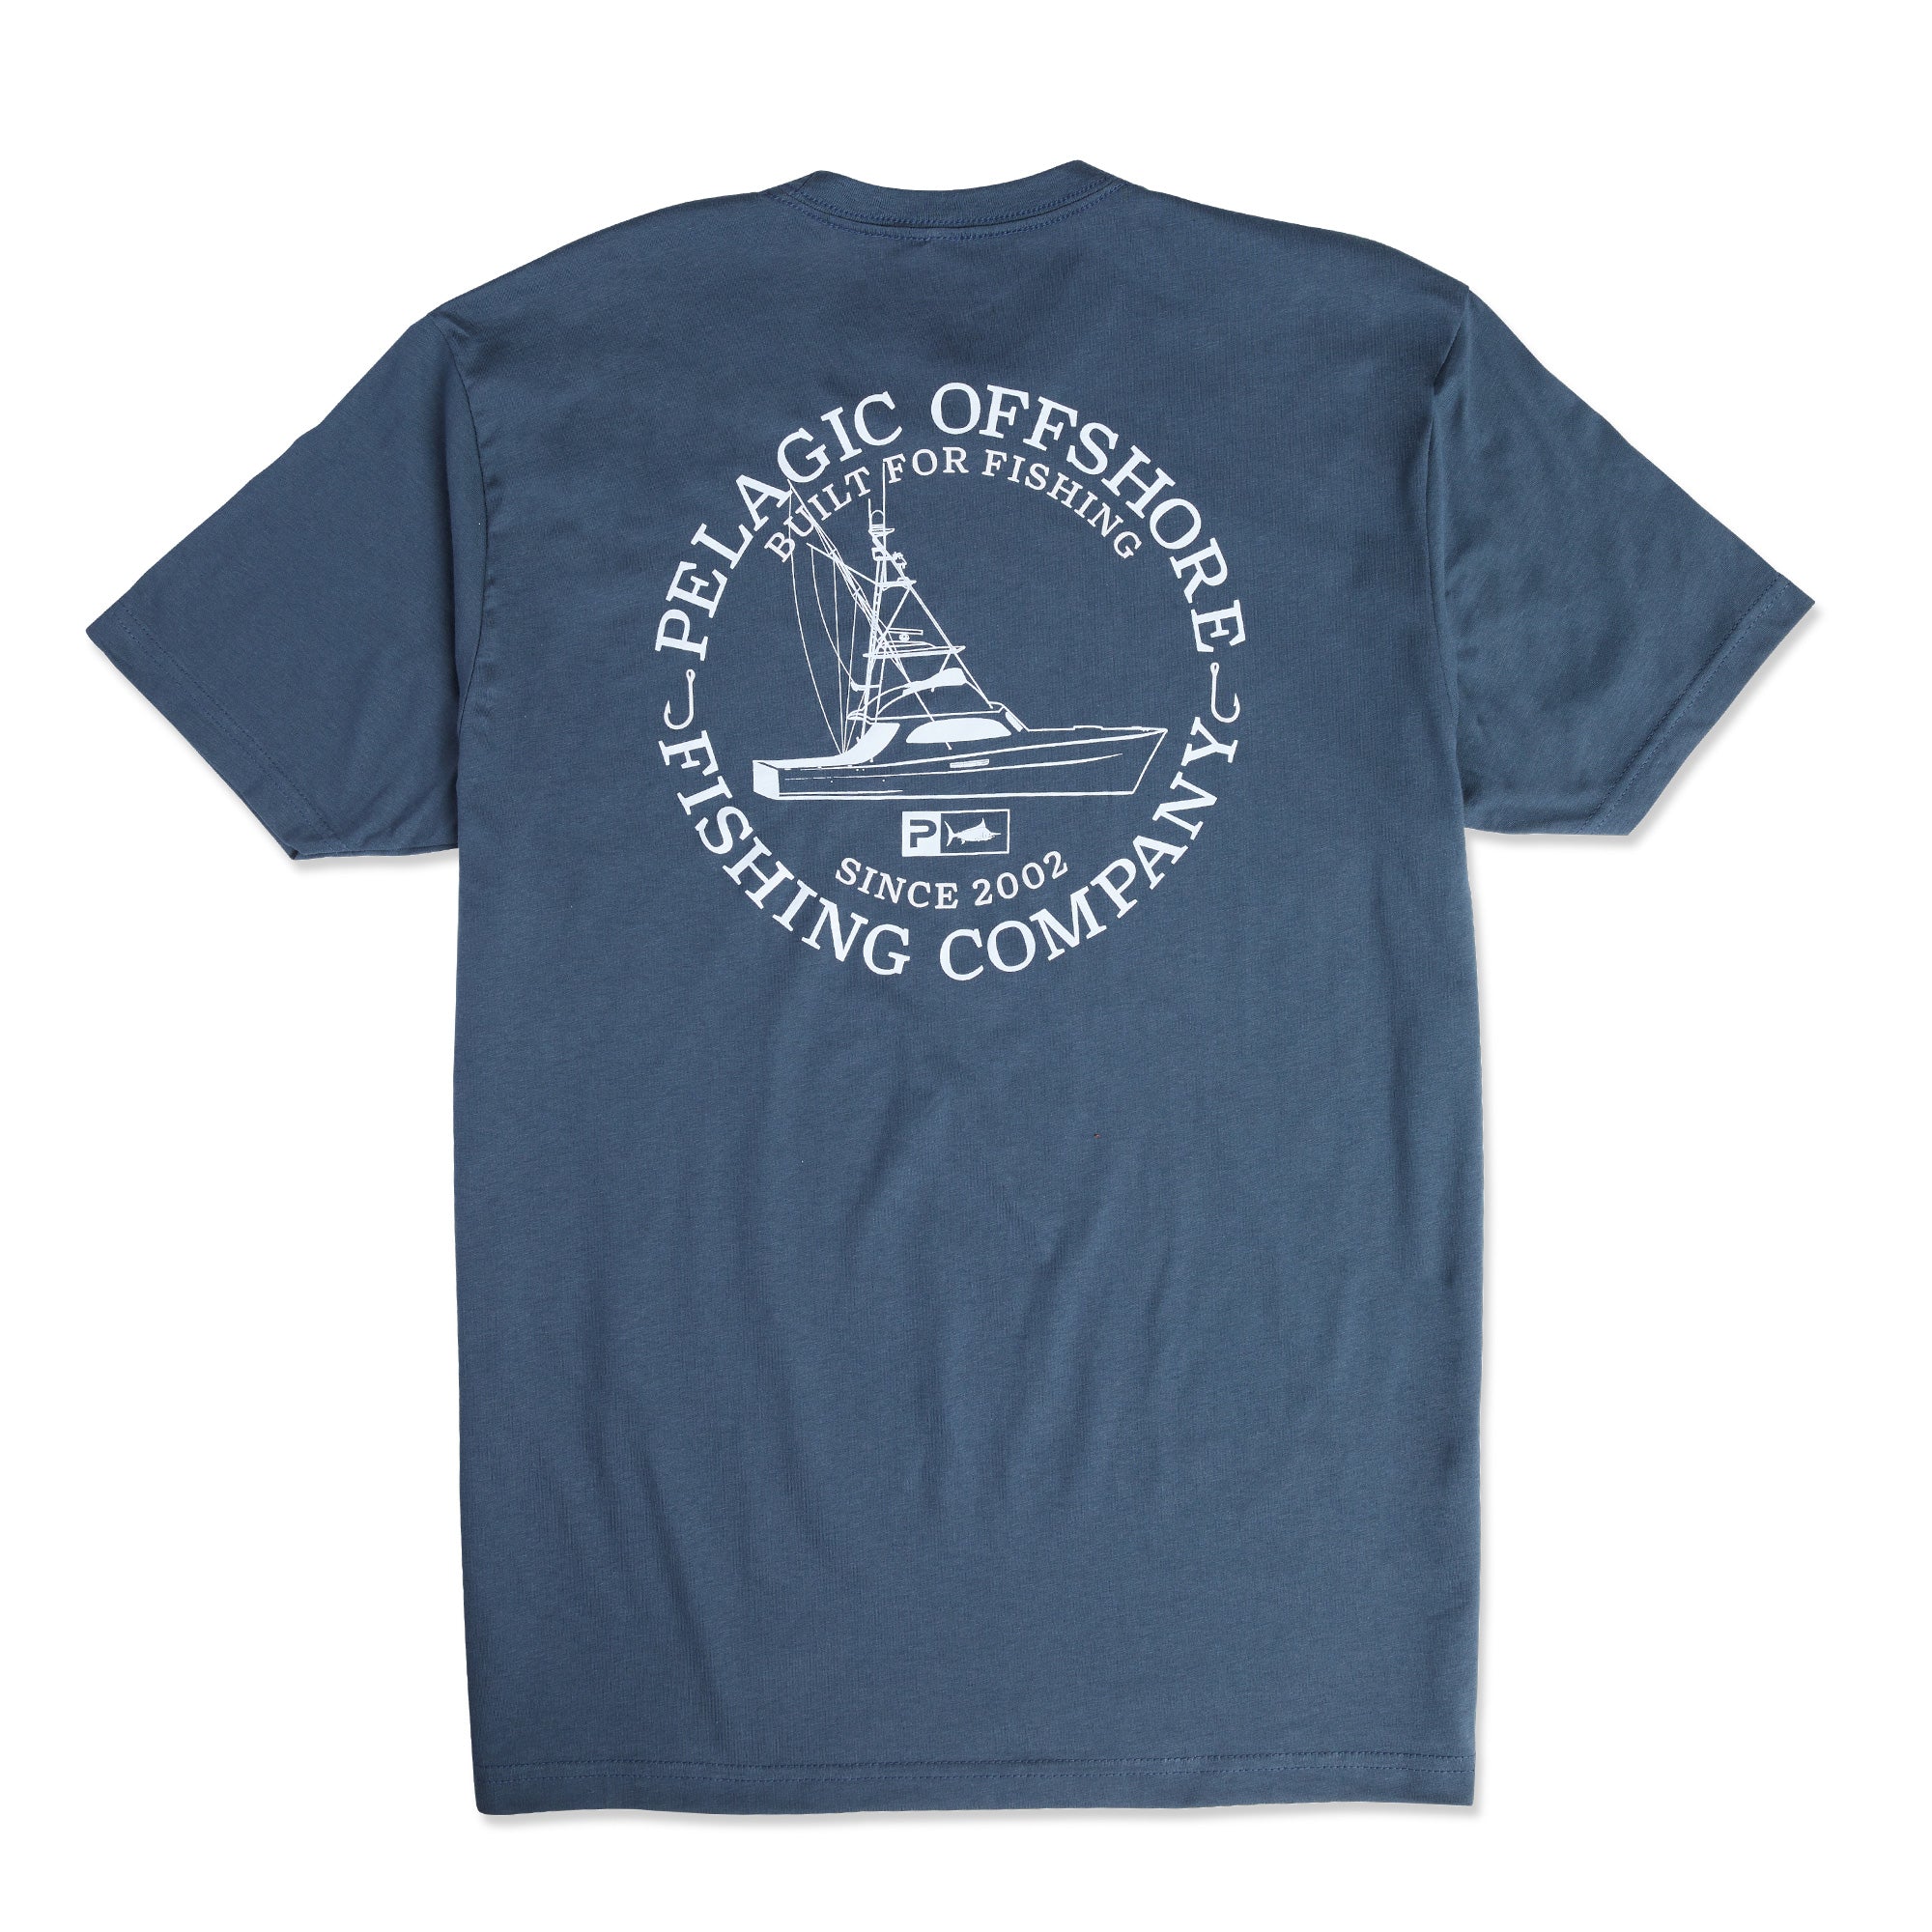 Charter Boat T-Shirt  PELAGIC Fishing Gear